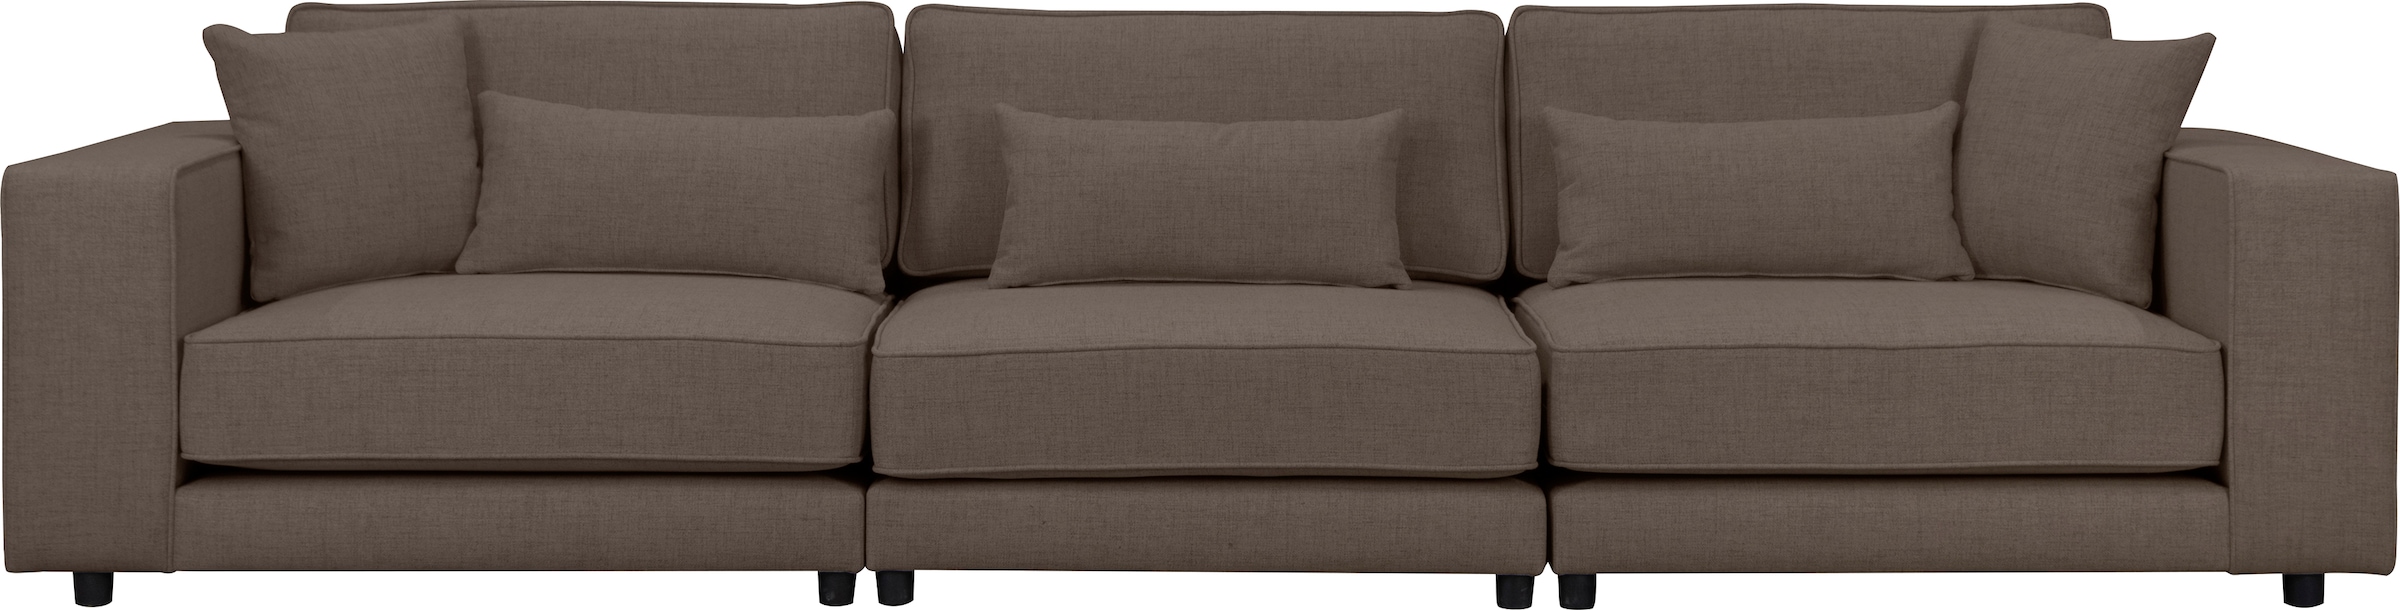 Big-Sofa »Grenette«, Modulsofa, im Baumwoll-/Leinenmix oder aus recycelten Stoffen